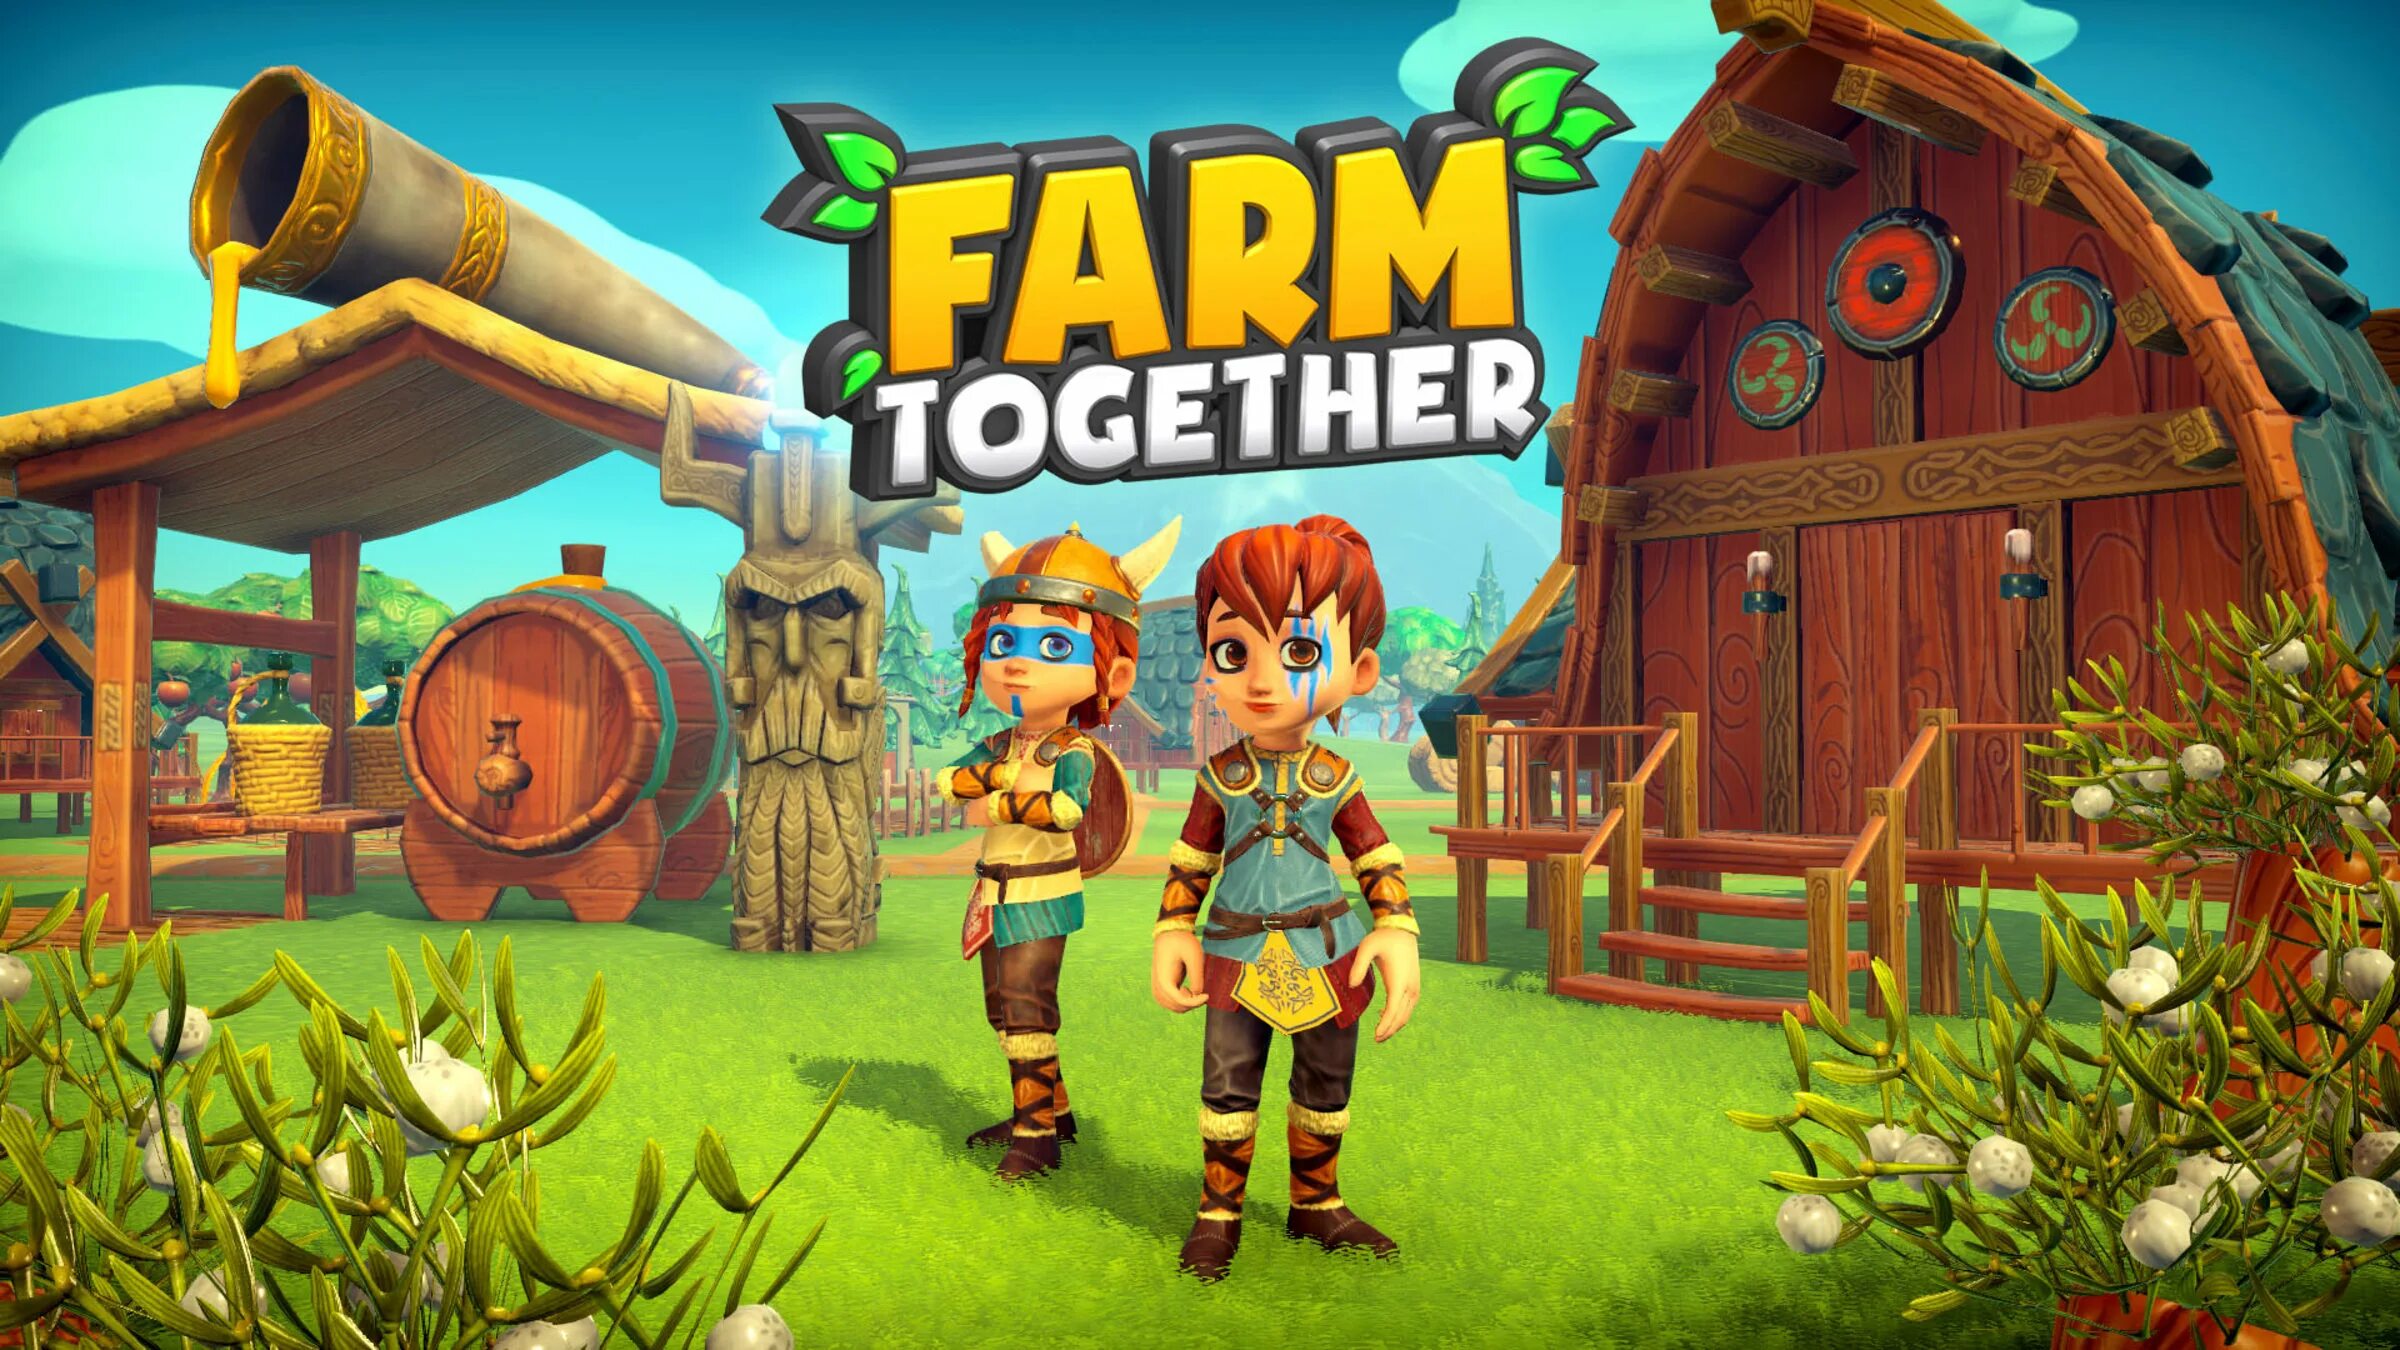 Farm together. Фермы в игре Farm together. Farm together 2. Farm together обложка.